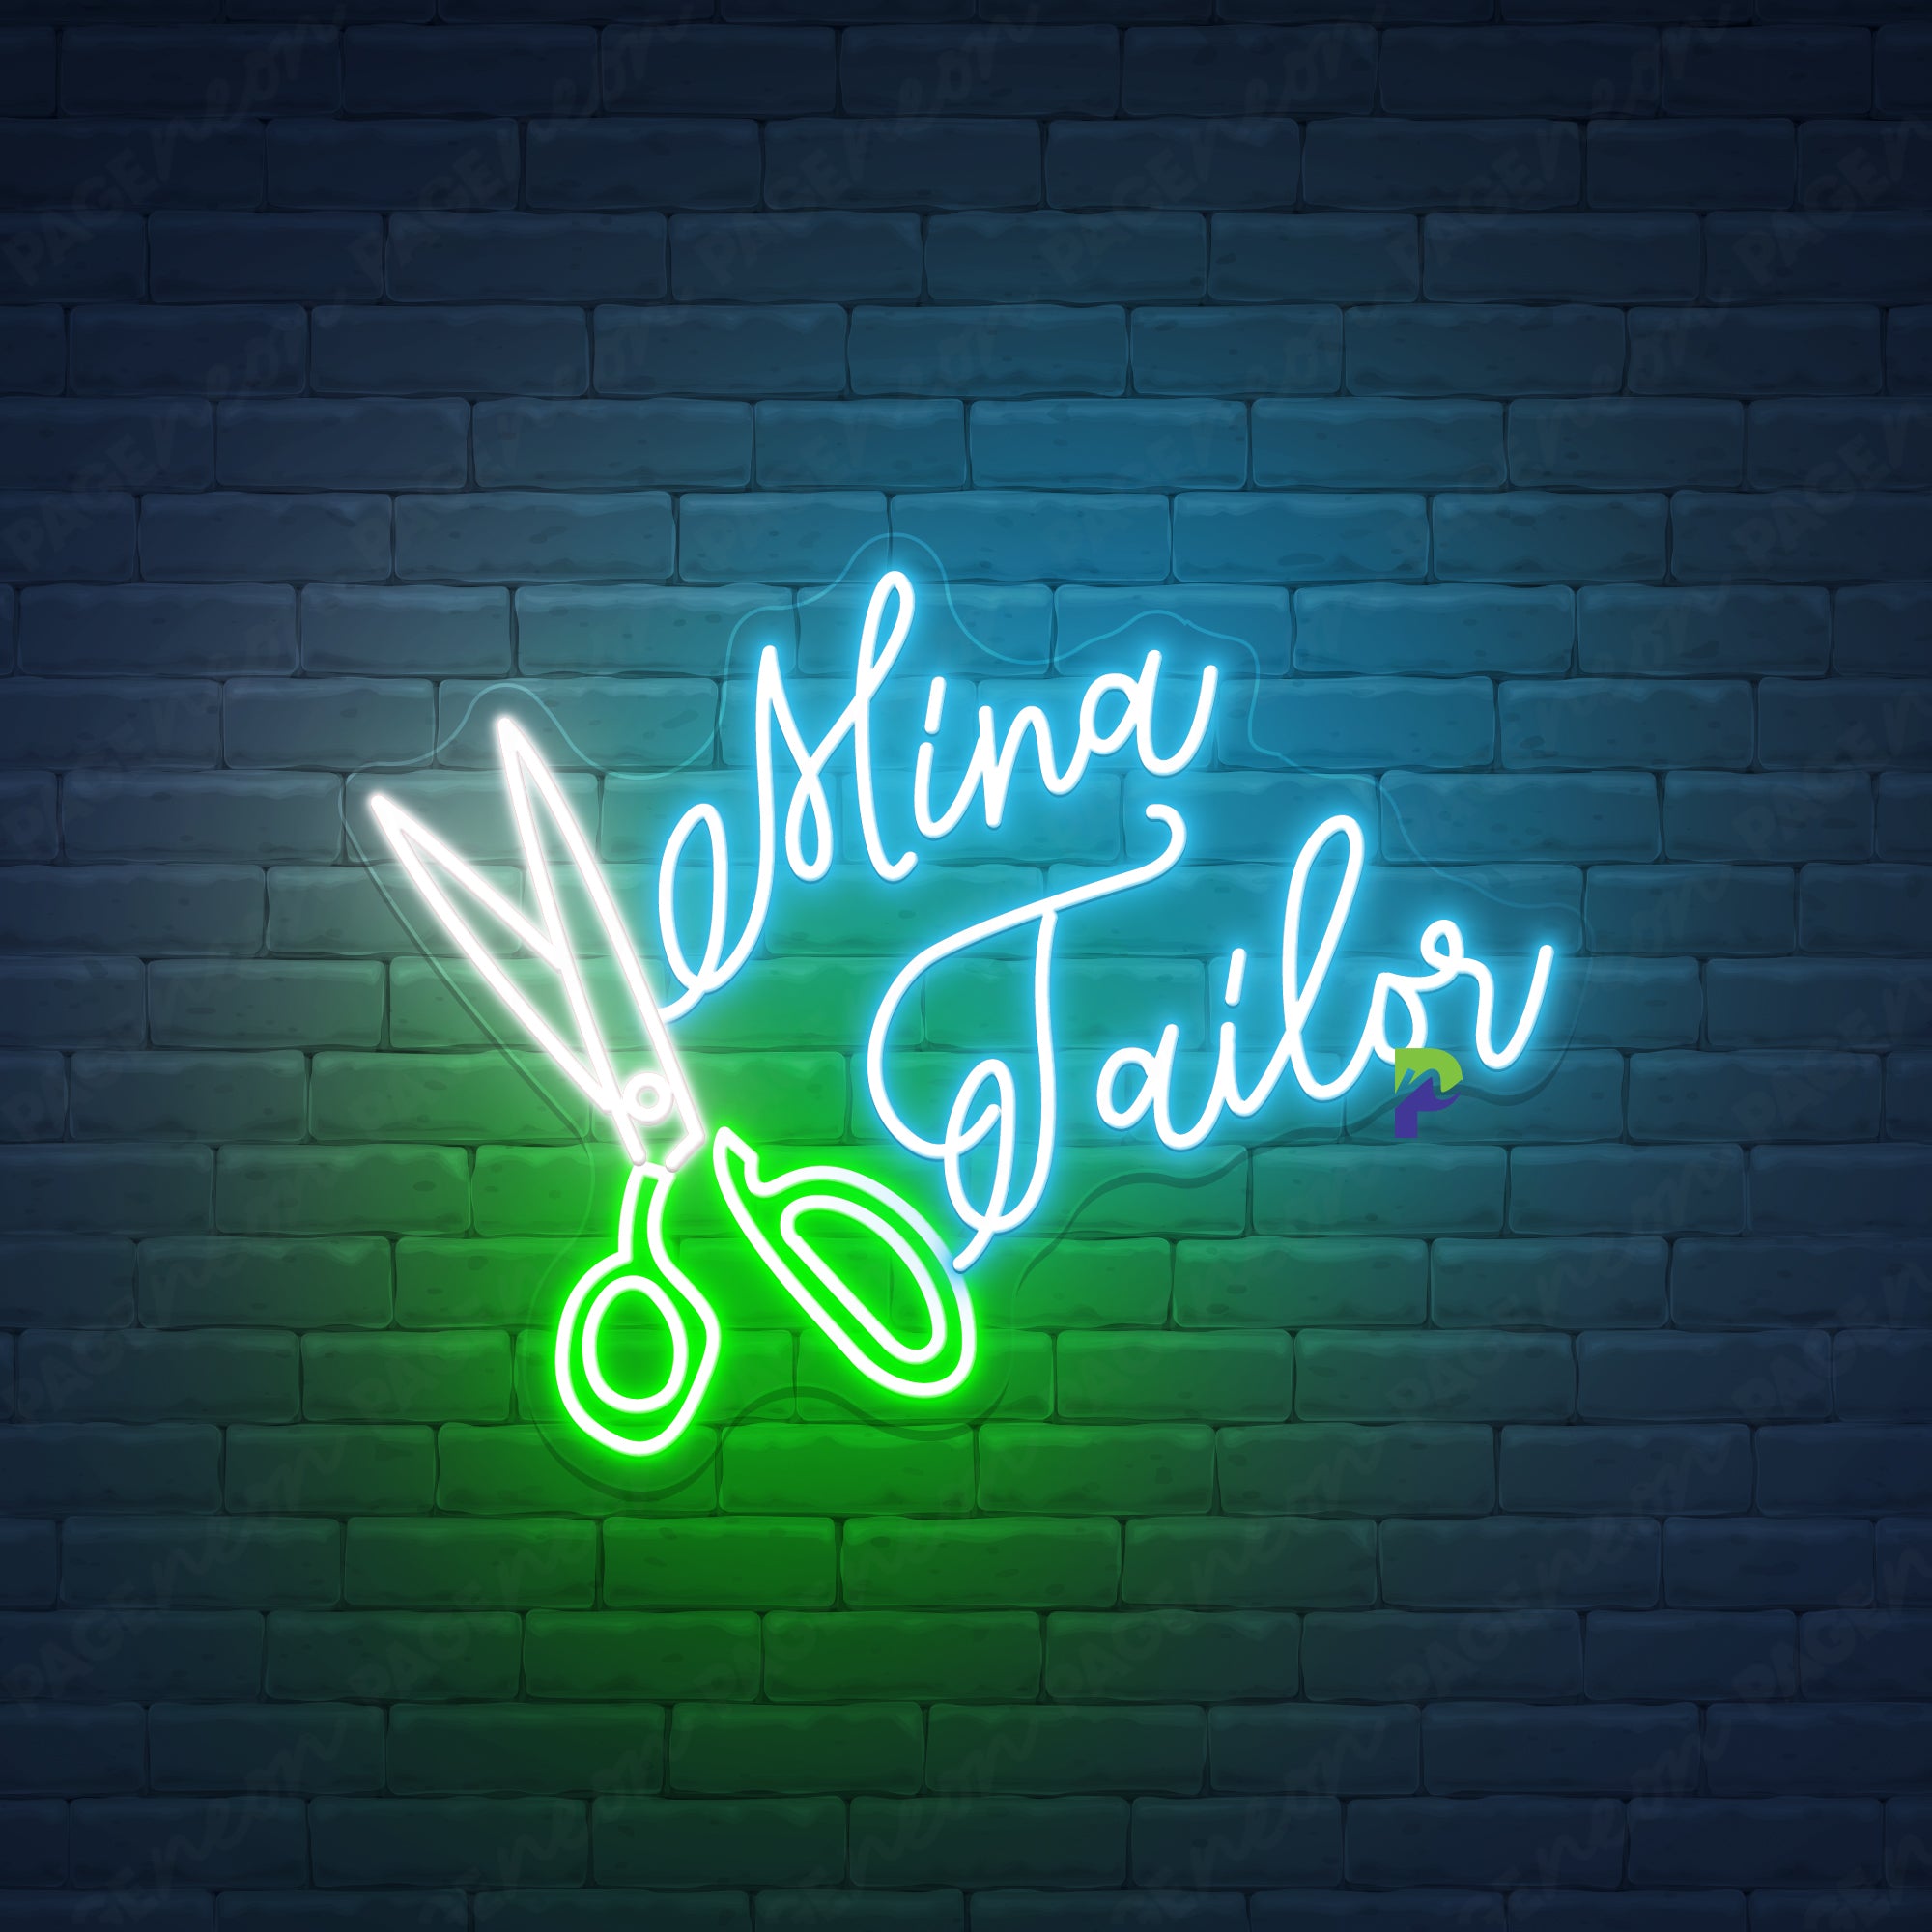 Tailor Neon Sign Custom Business Led Light